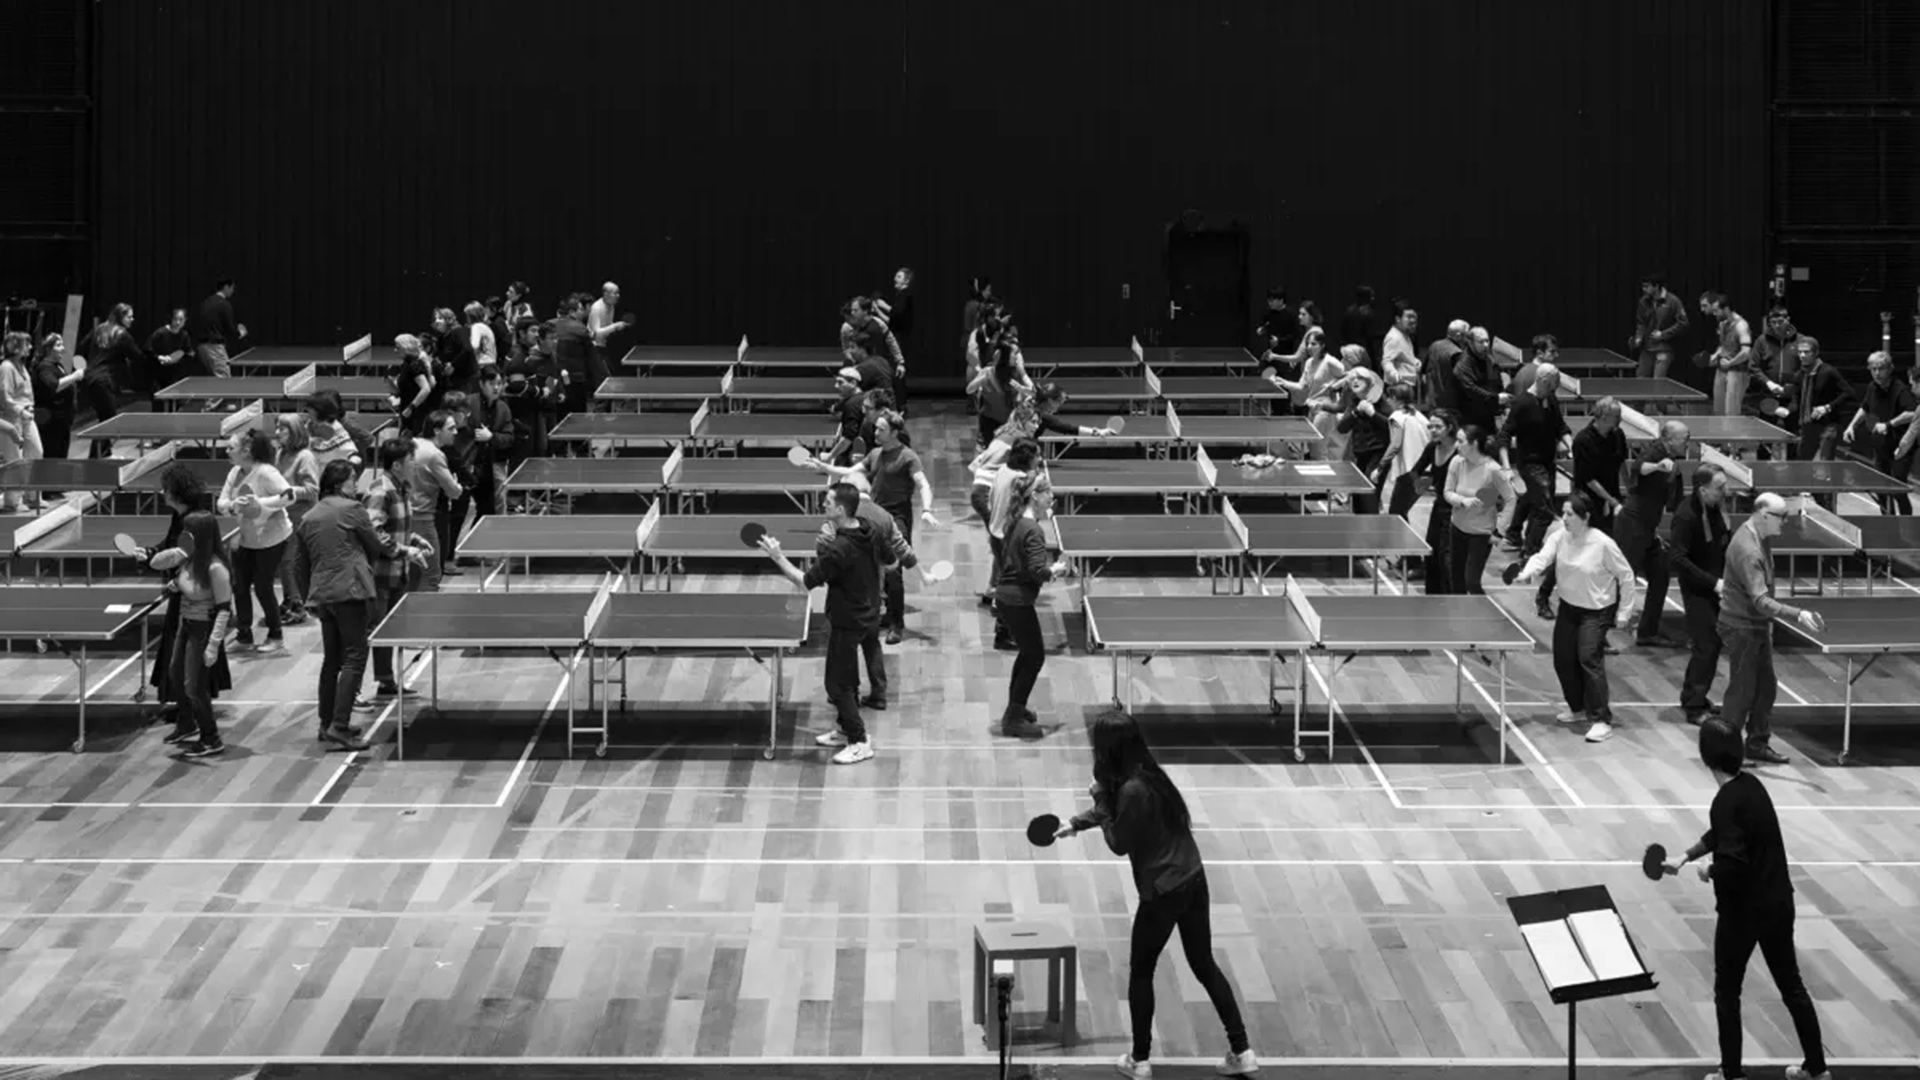 El ping pong fue clave en aquella visita del presidente Nixon a China en 1972, esta escena de la ópera lo refleja (Foto: Ópera de París)